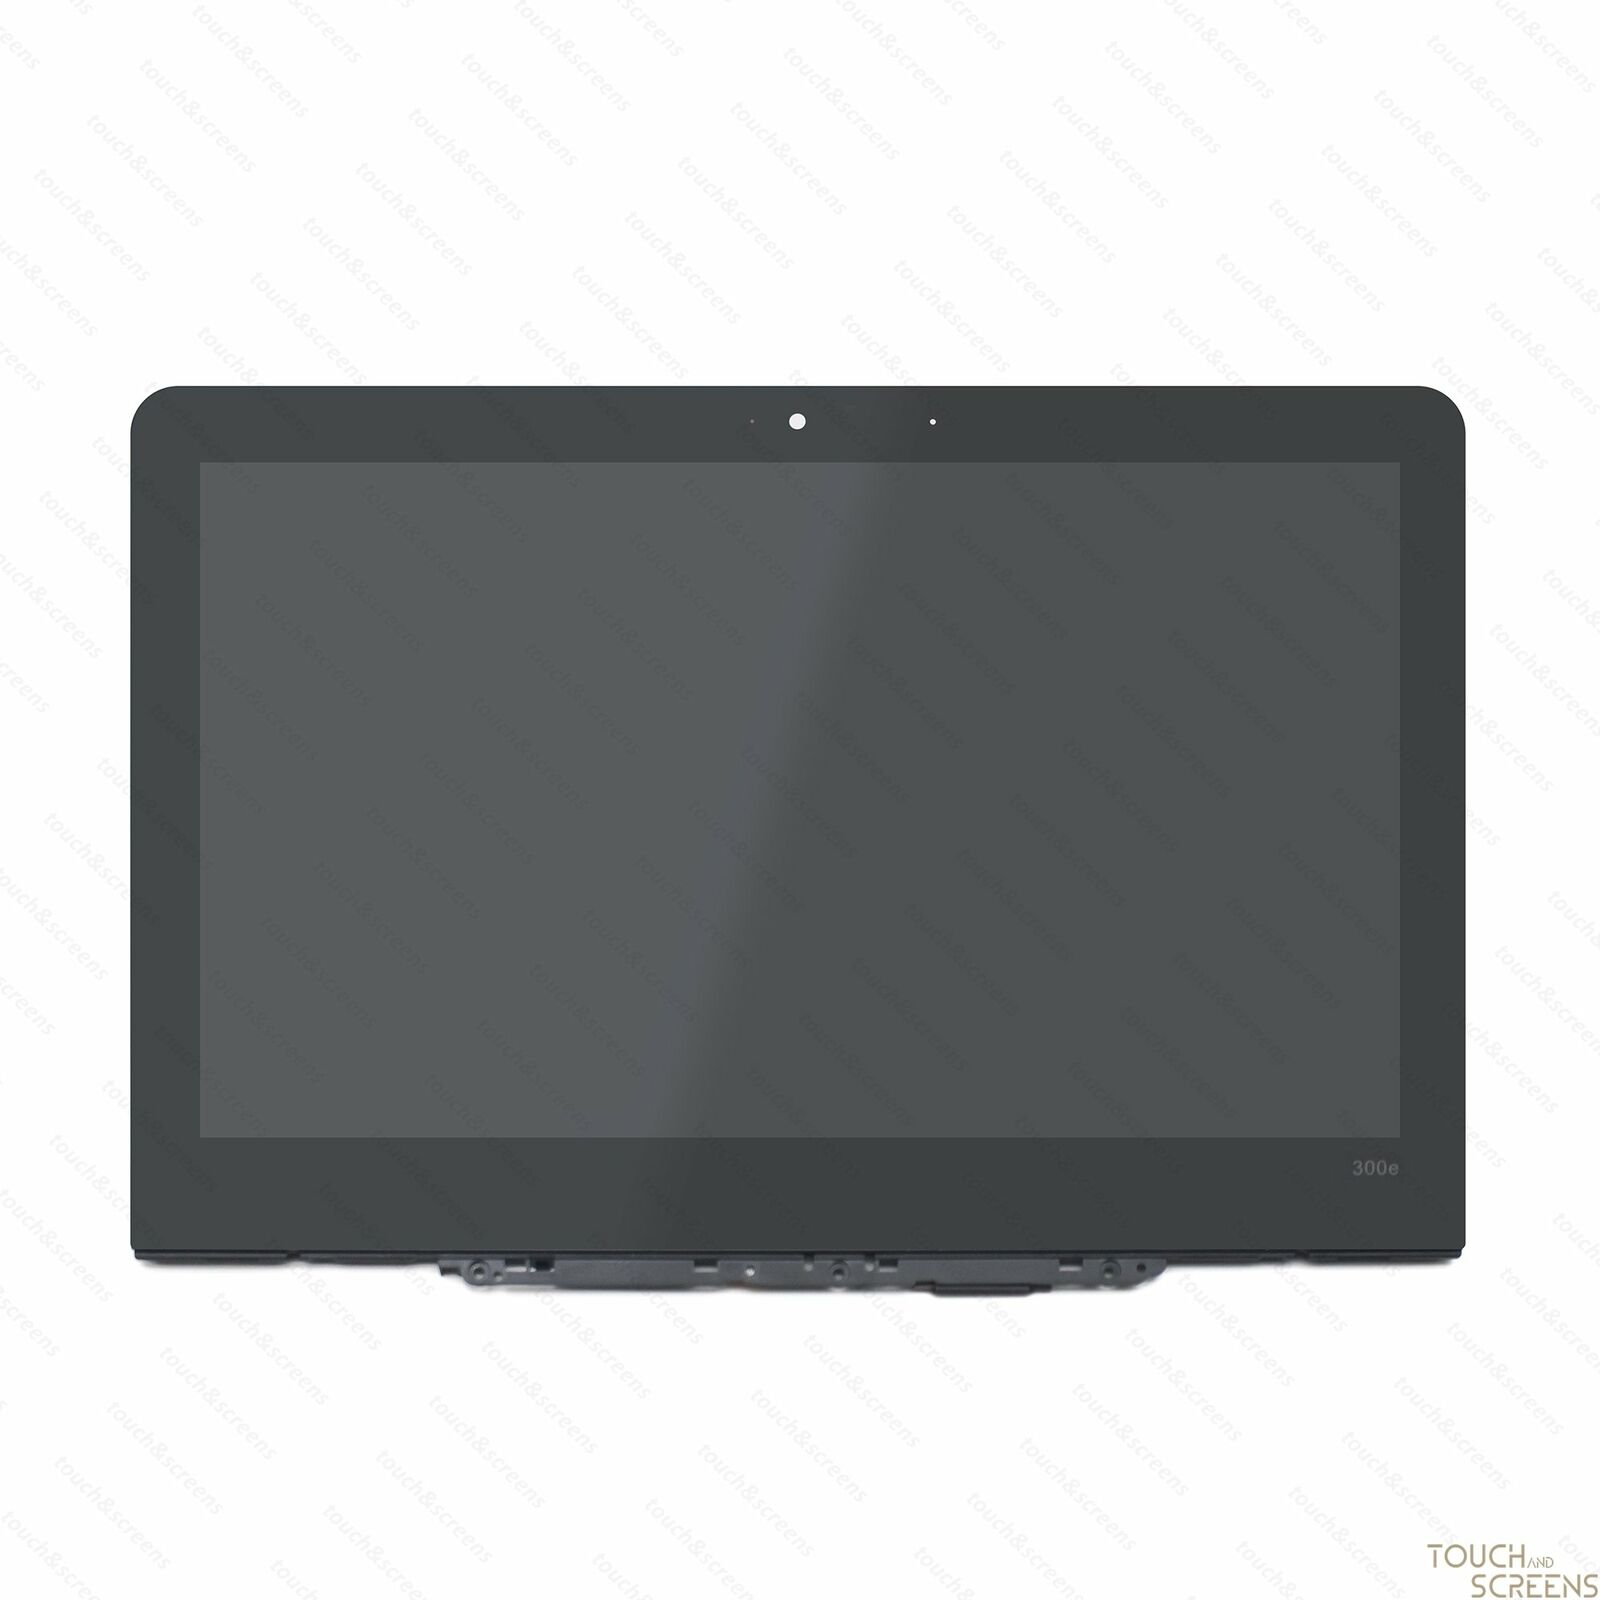 5D10R13451 LCD Touchscreen Digitizer Assembly for Lenovo Chromebook 300e 81H0